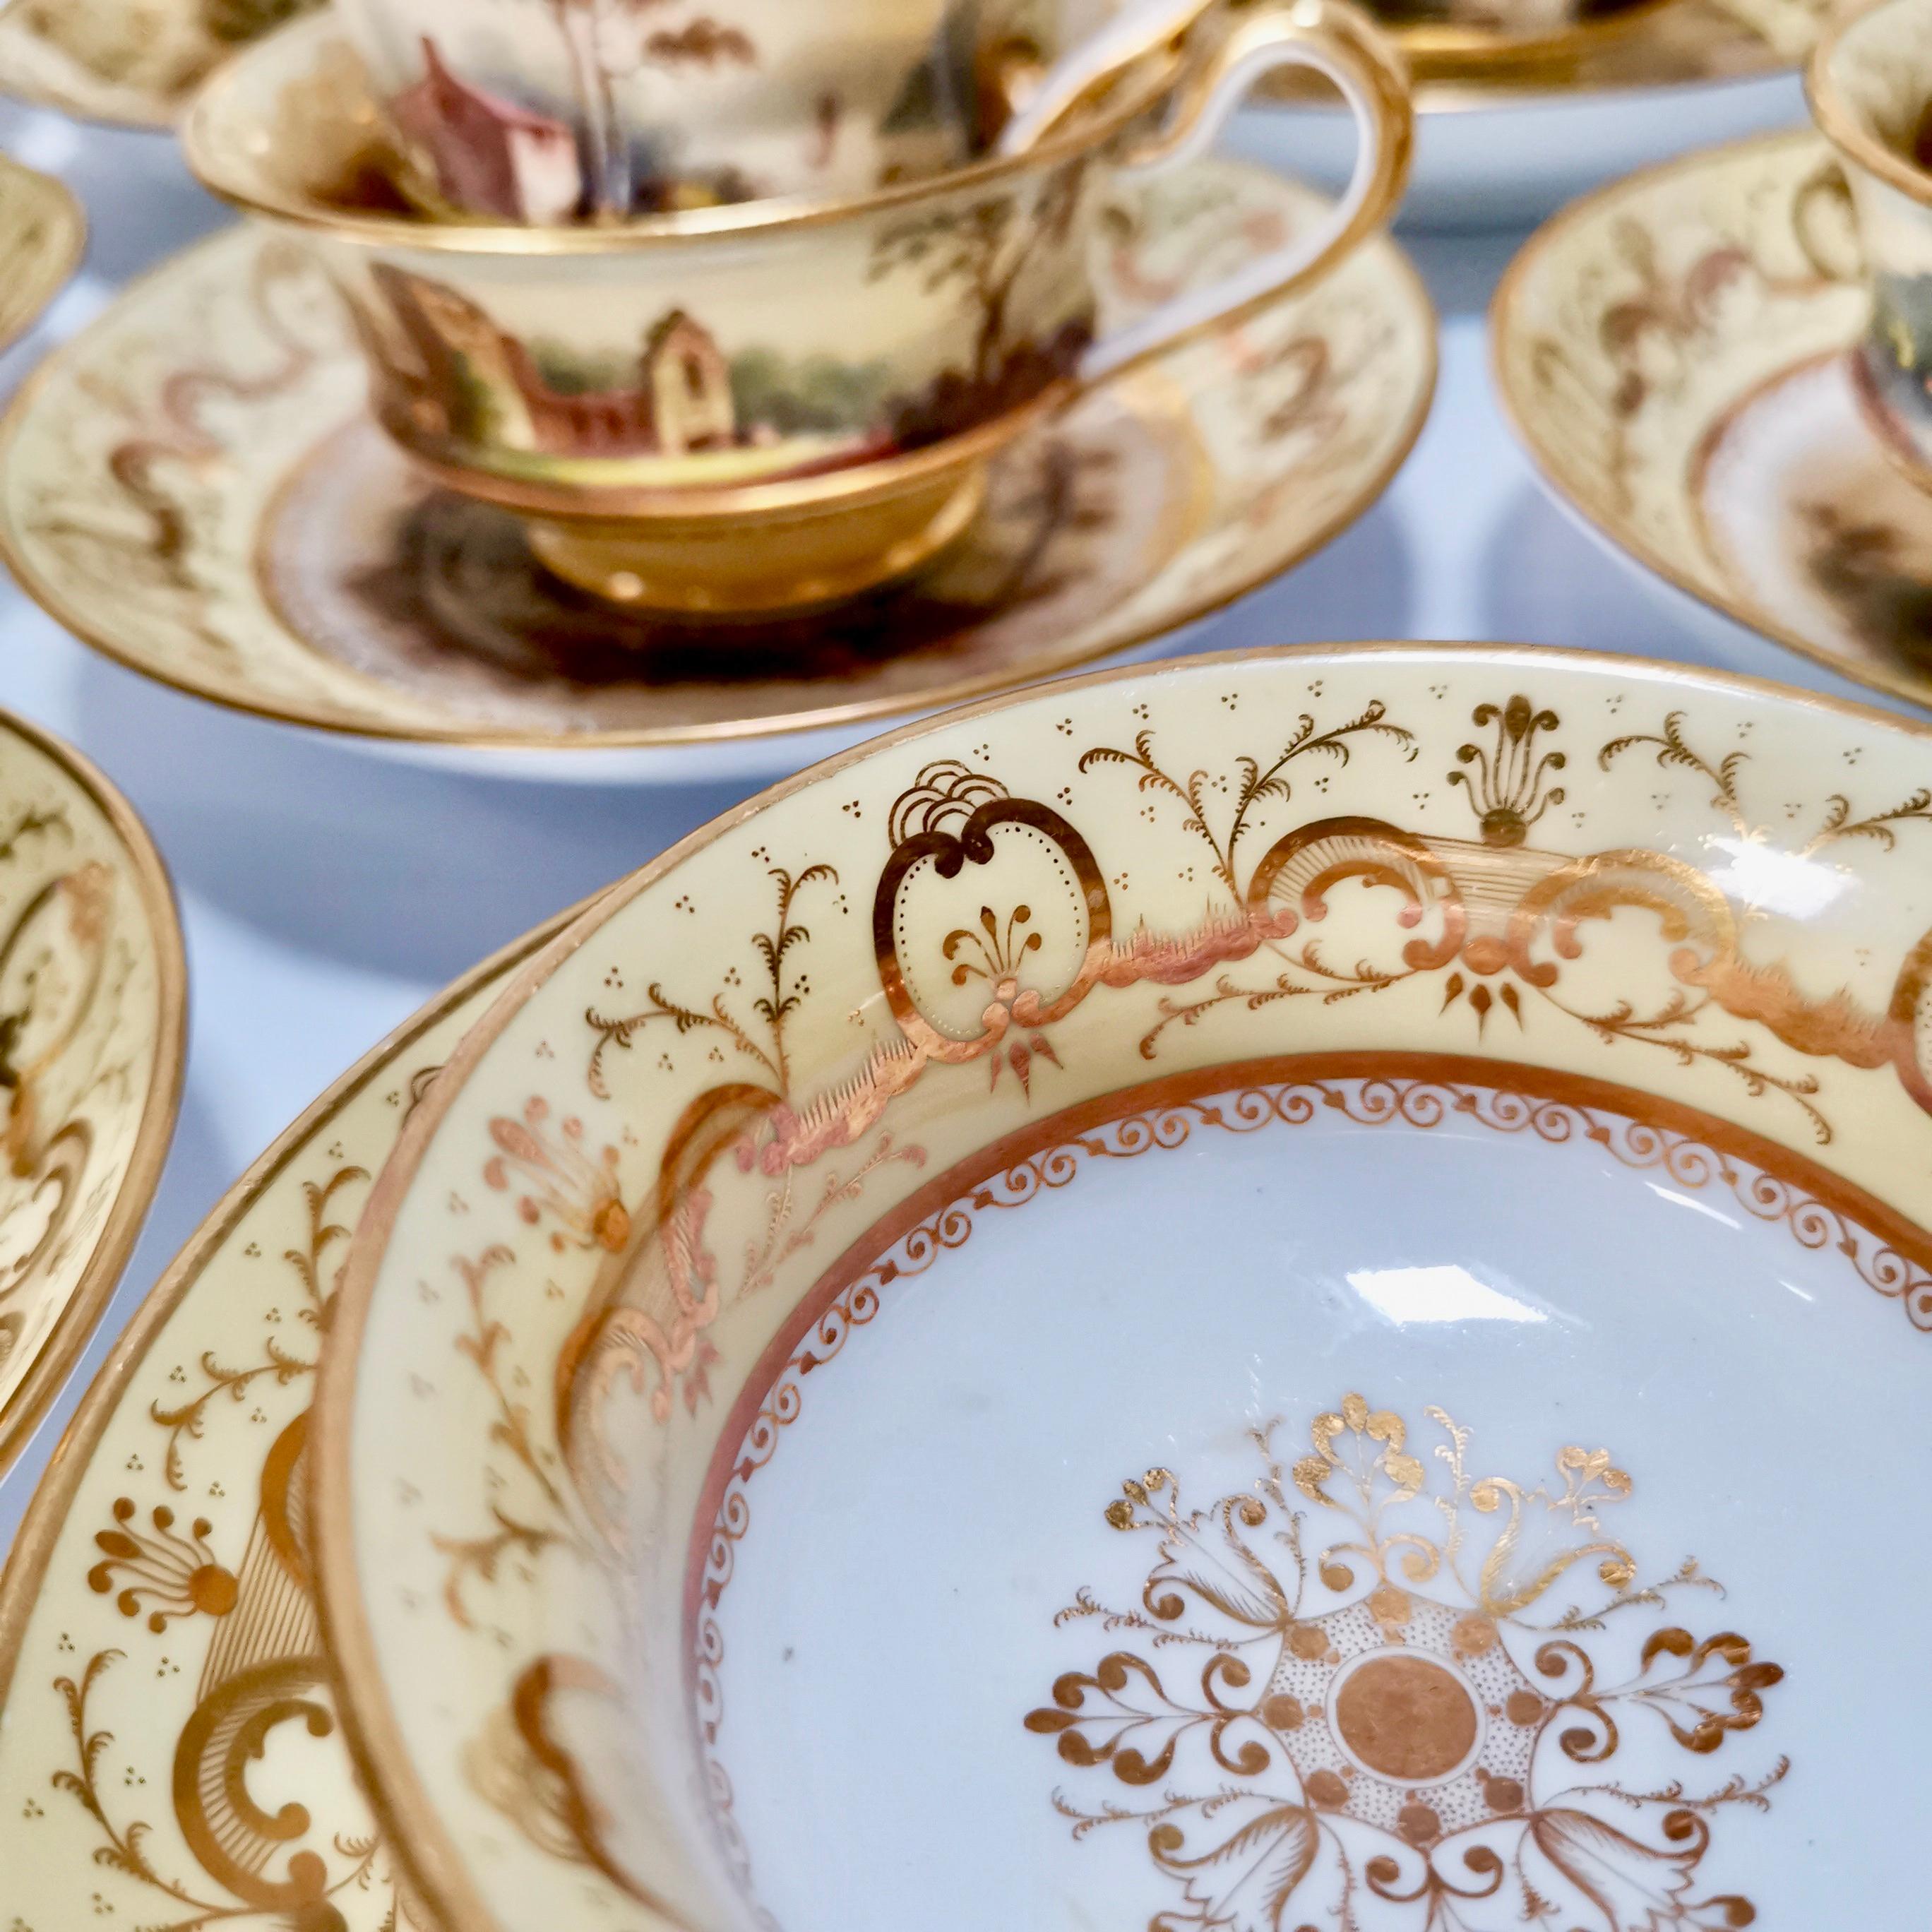 Minton Porcelain Tea Service, Yellow with Landscapes, Provenance Regency 5